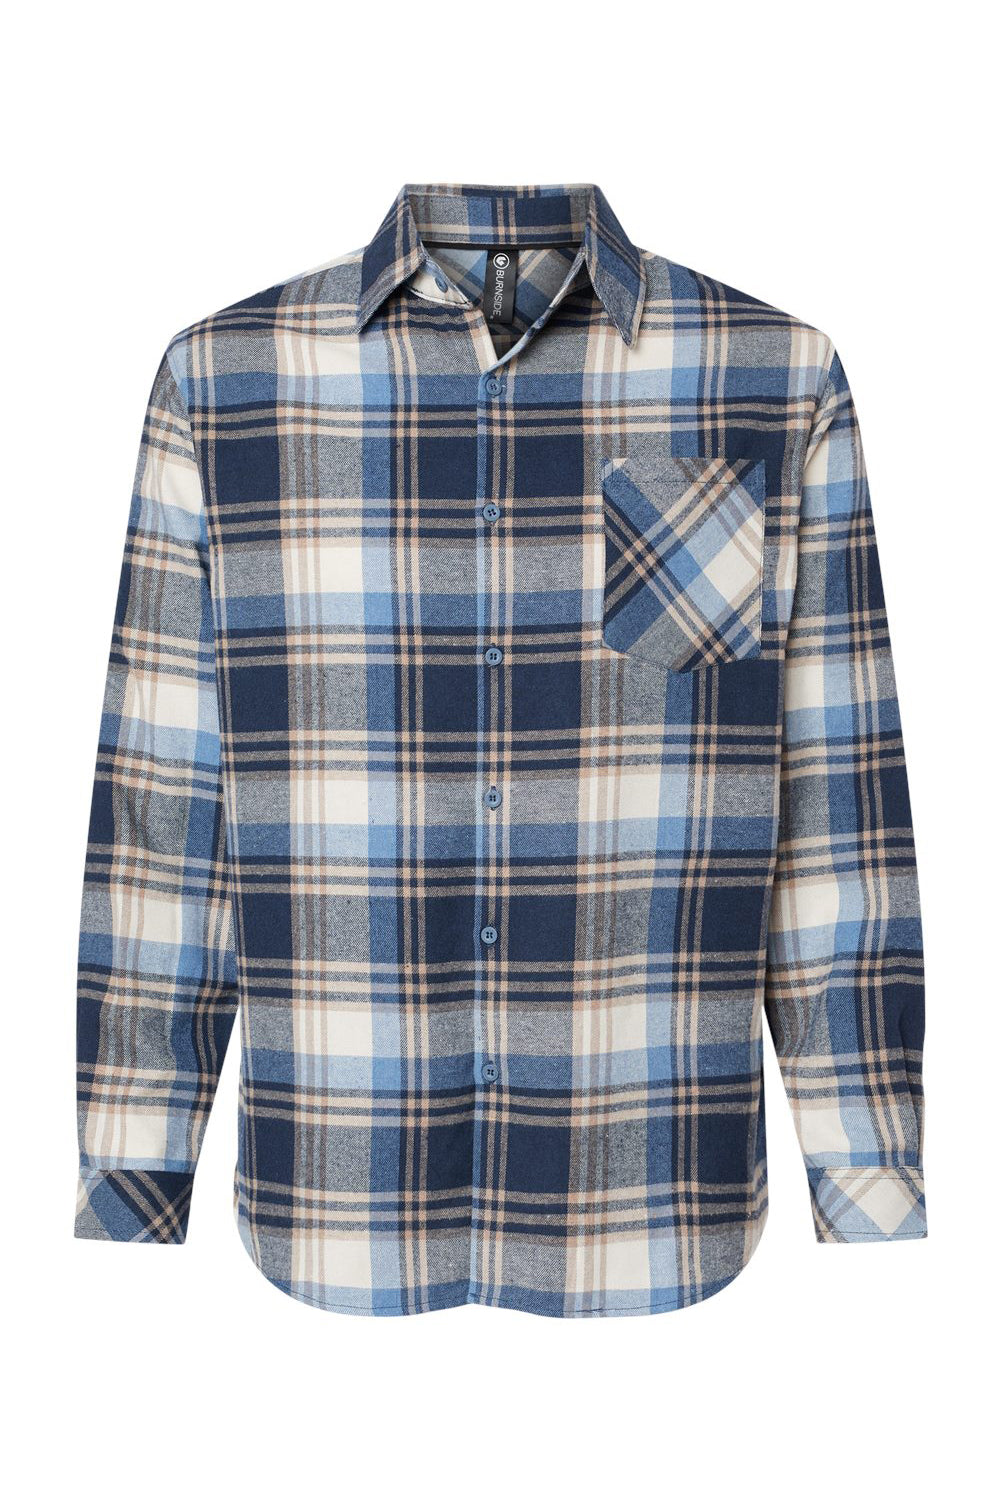 Burnside B8212 Mens Flannel Long Sleeve Button Down Shirt w/ Pocket Blue/Ecru Flat Front